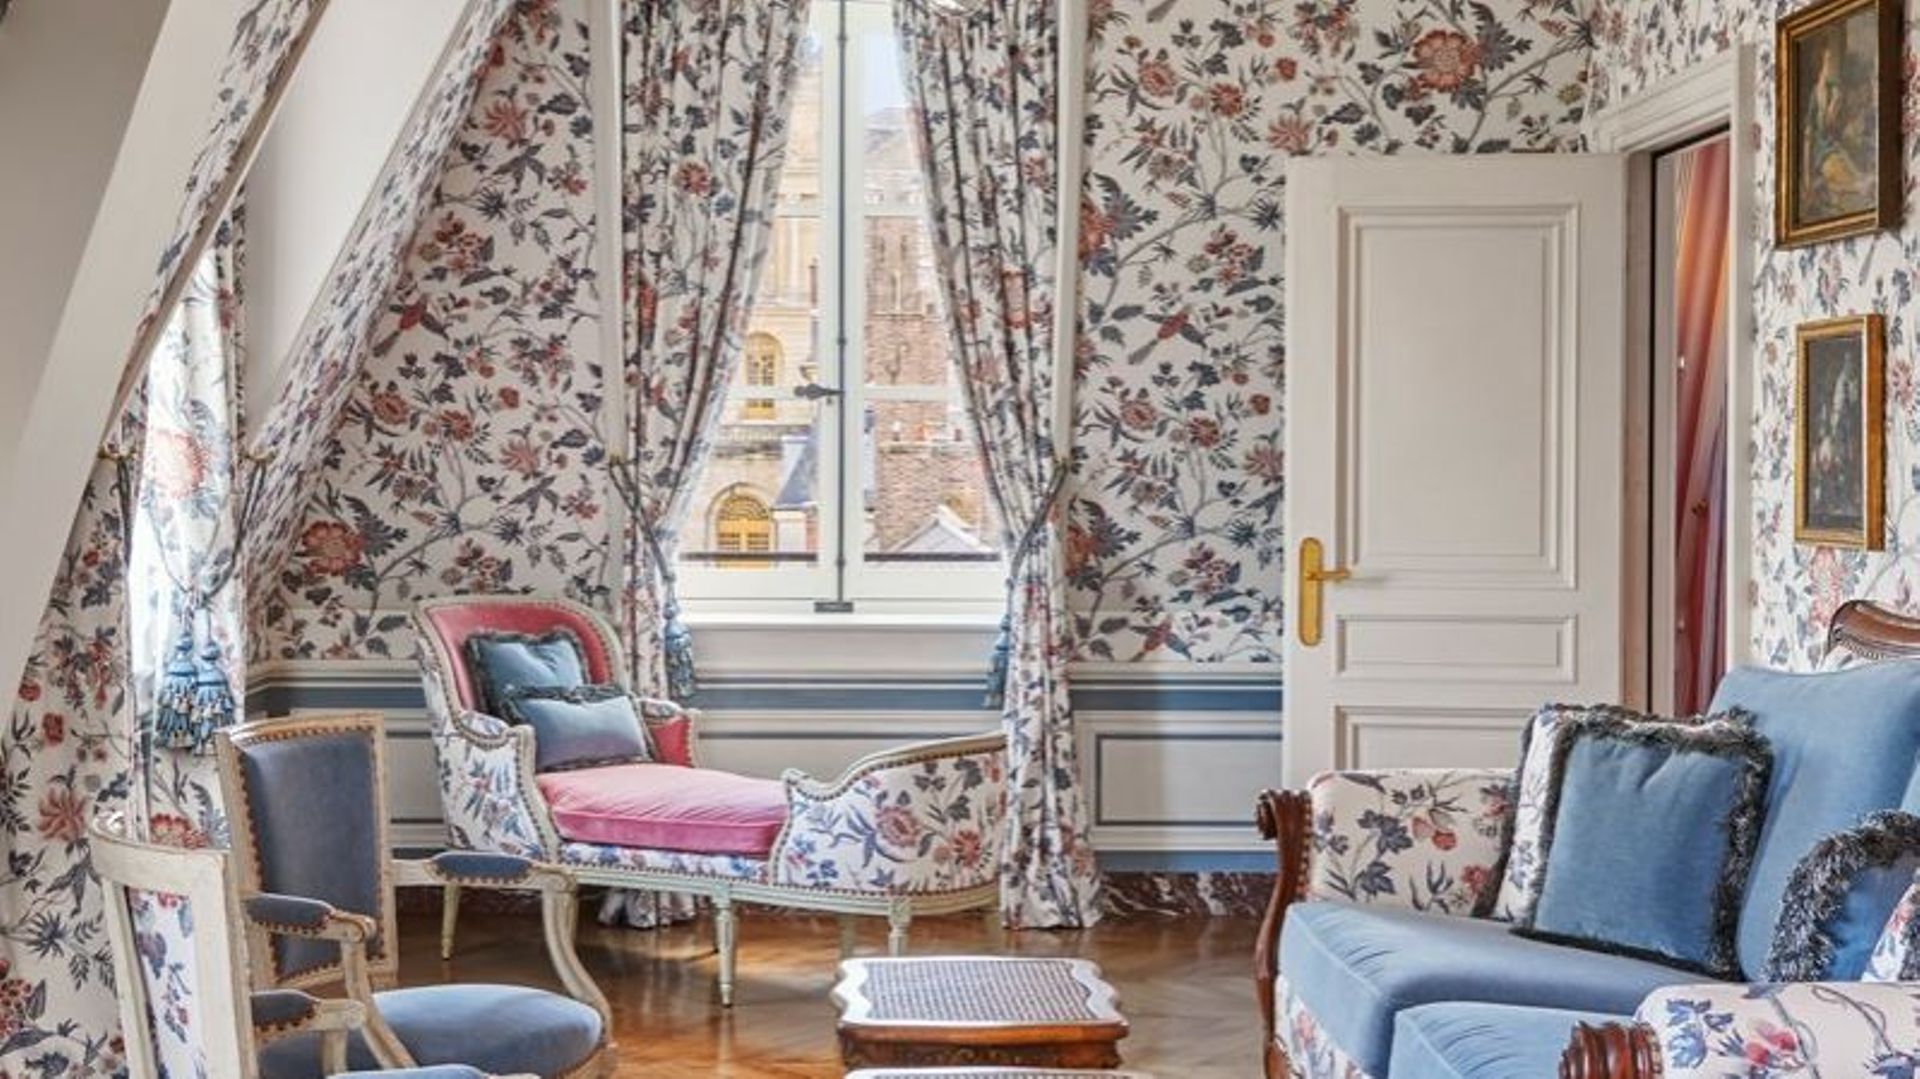 Motifs inspirés du Petit Trianon, où l’ancienne reine Marie-Antoinette a vécu. Suite de Madame de Staël.